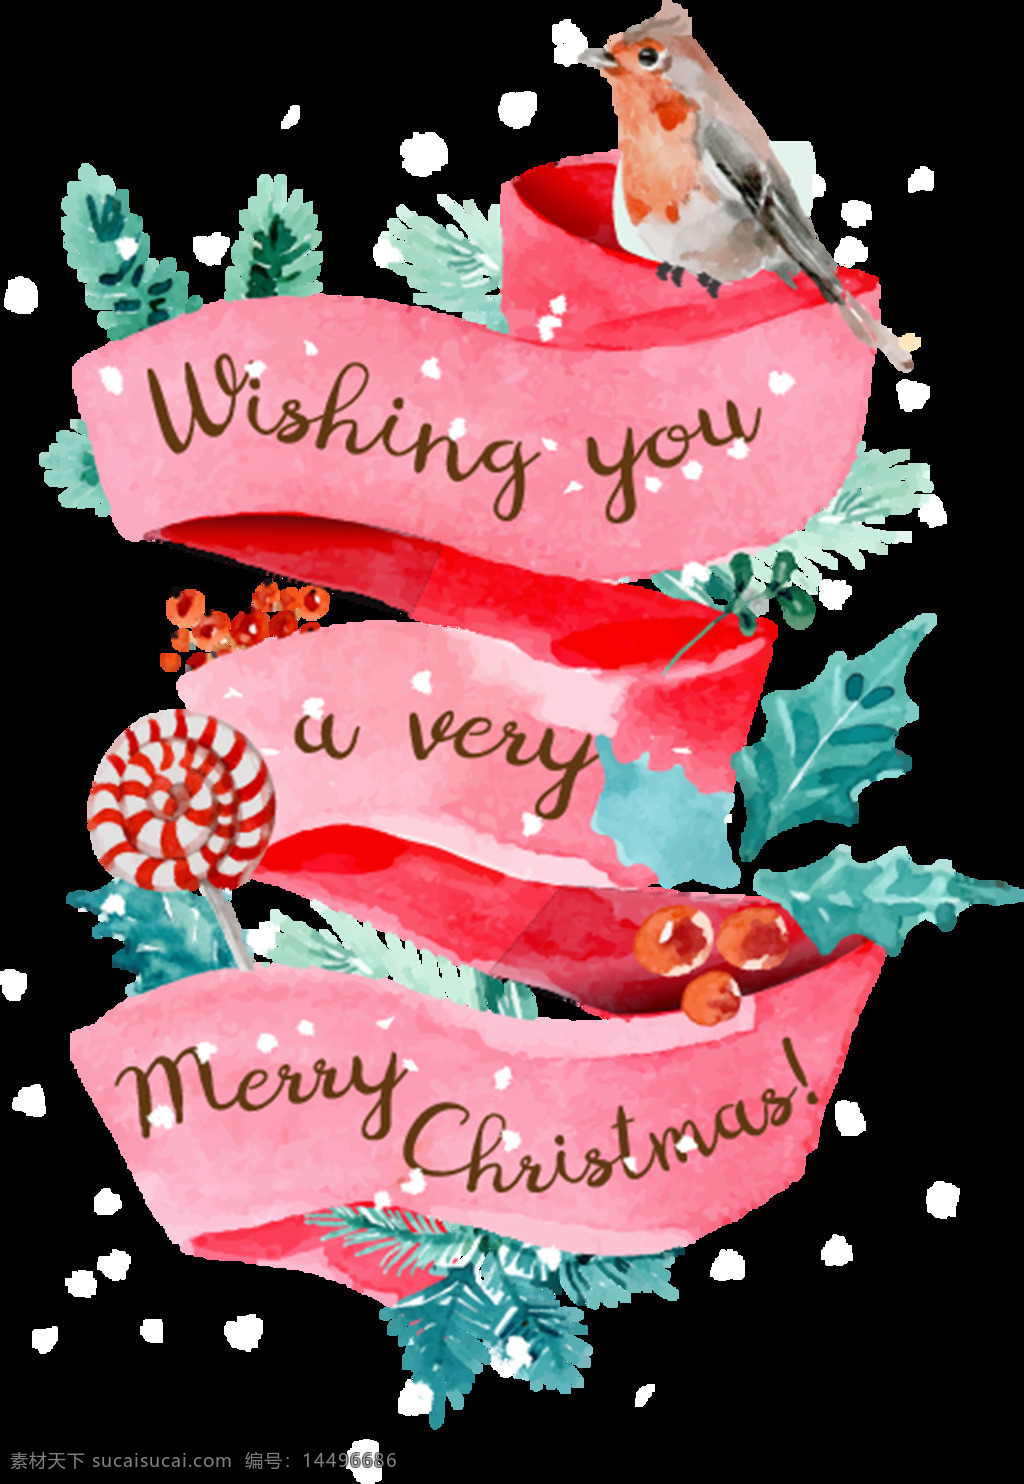 精美 粉色 圣诞 装饰 元素 christmas merry 卡通元素 设计素材 圣诞png 圣诞免抠元素 圣诞素材 圣诞元素下载 装饰图案